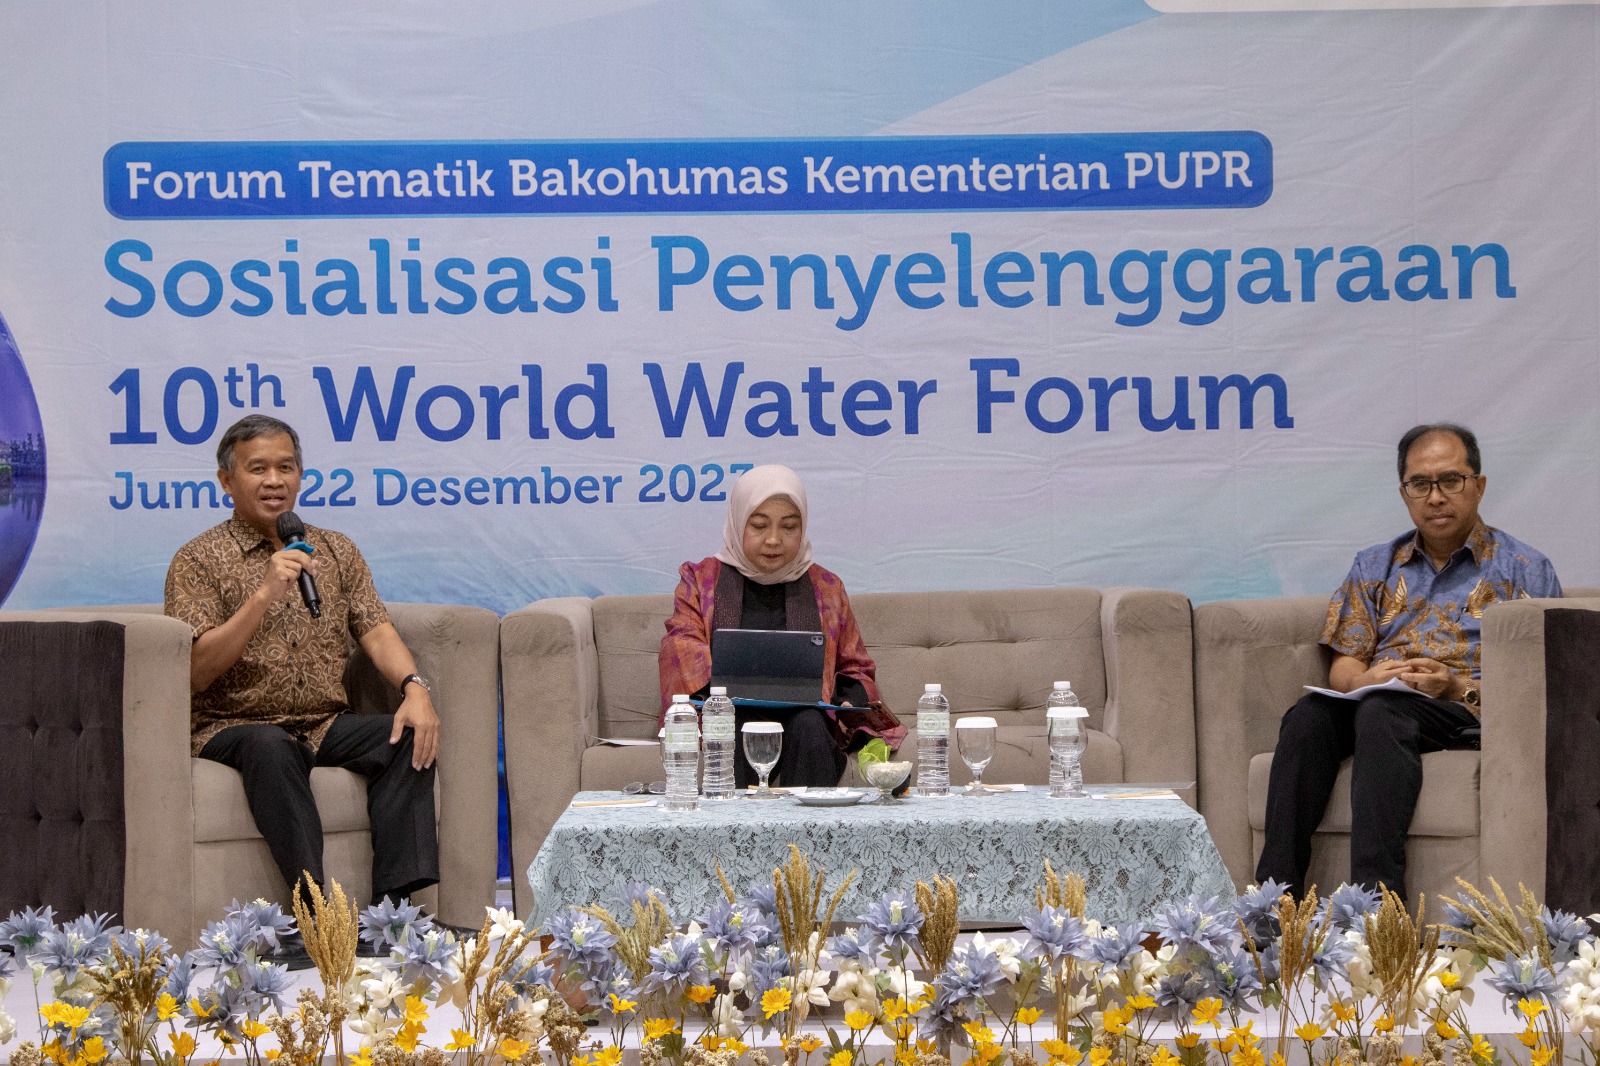 Hai, Anak Muda! Catat Tanggalnya, Indonesia akan Jadi Tuan Rumah 10th World Water Forum 2024